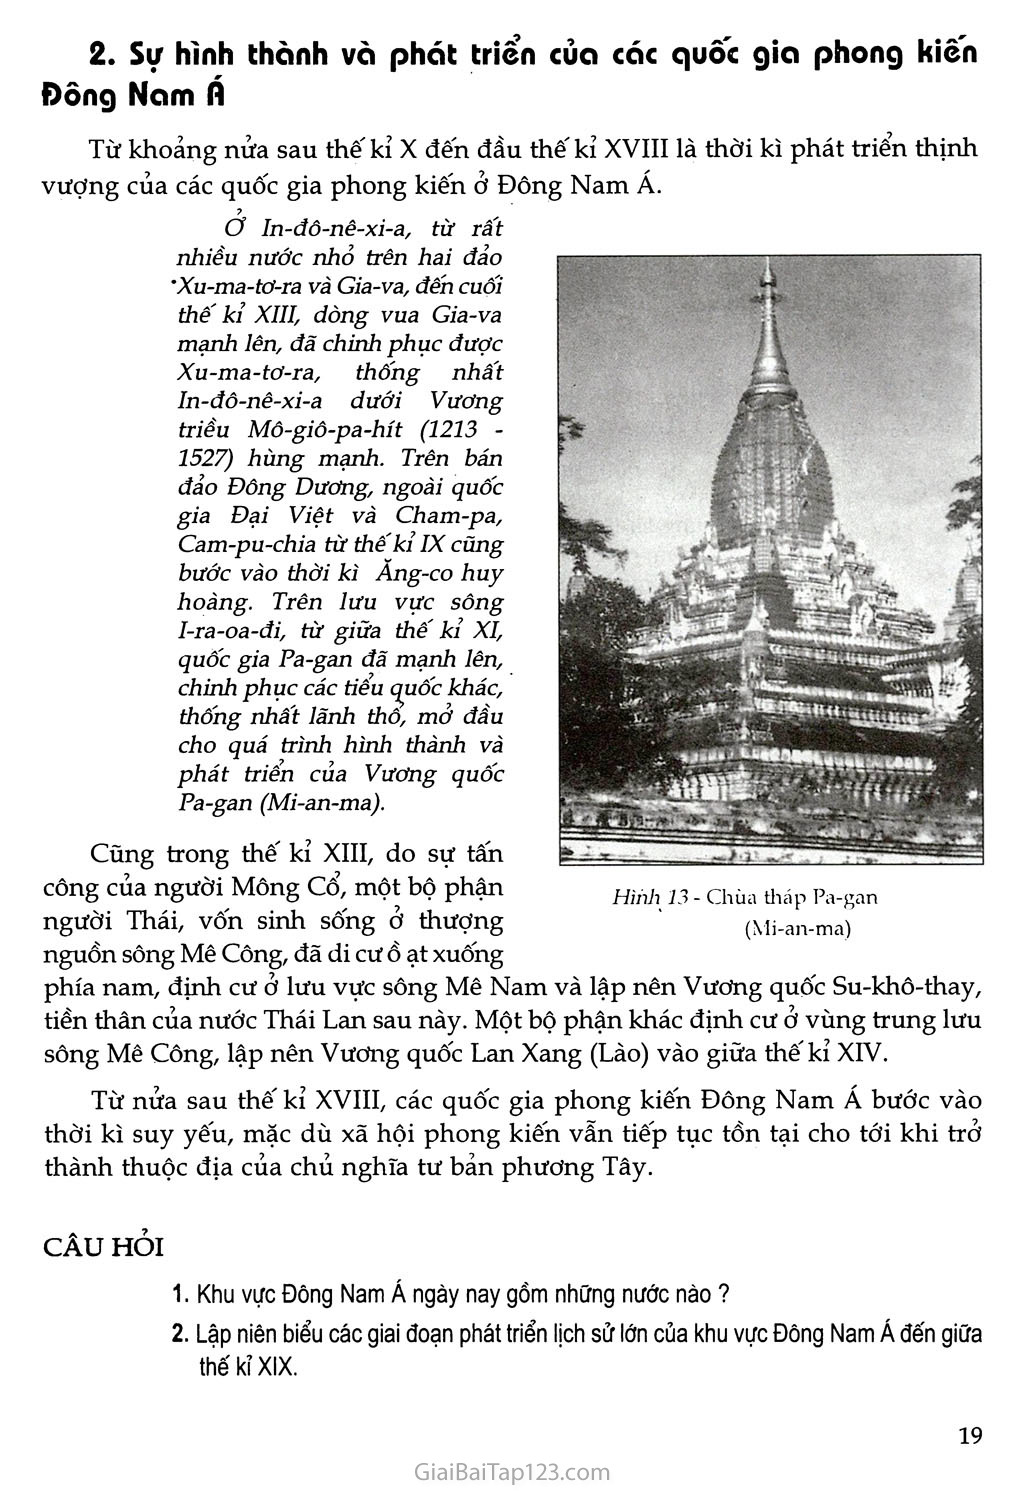 Bài 6 - Các quốc gia phong kiến Đông Nam Á trang 2